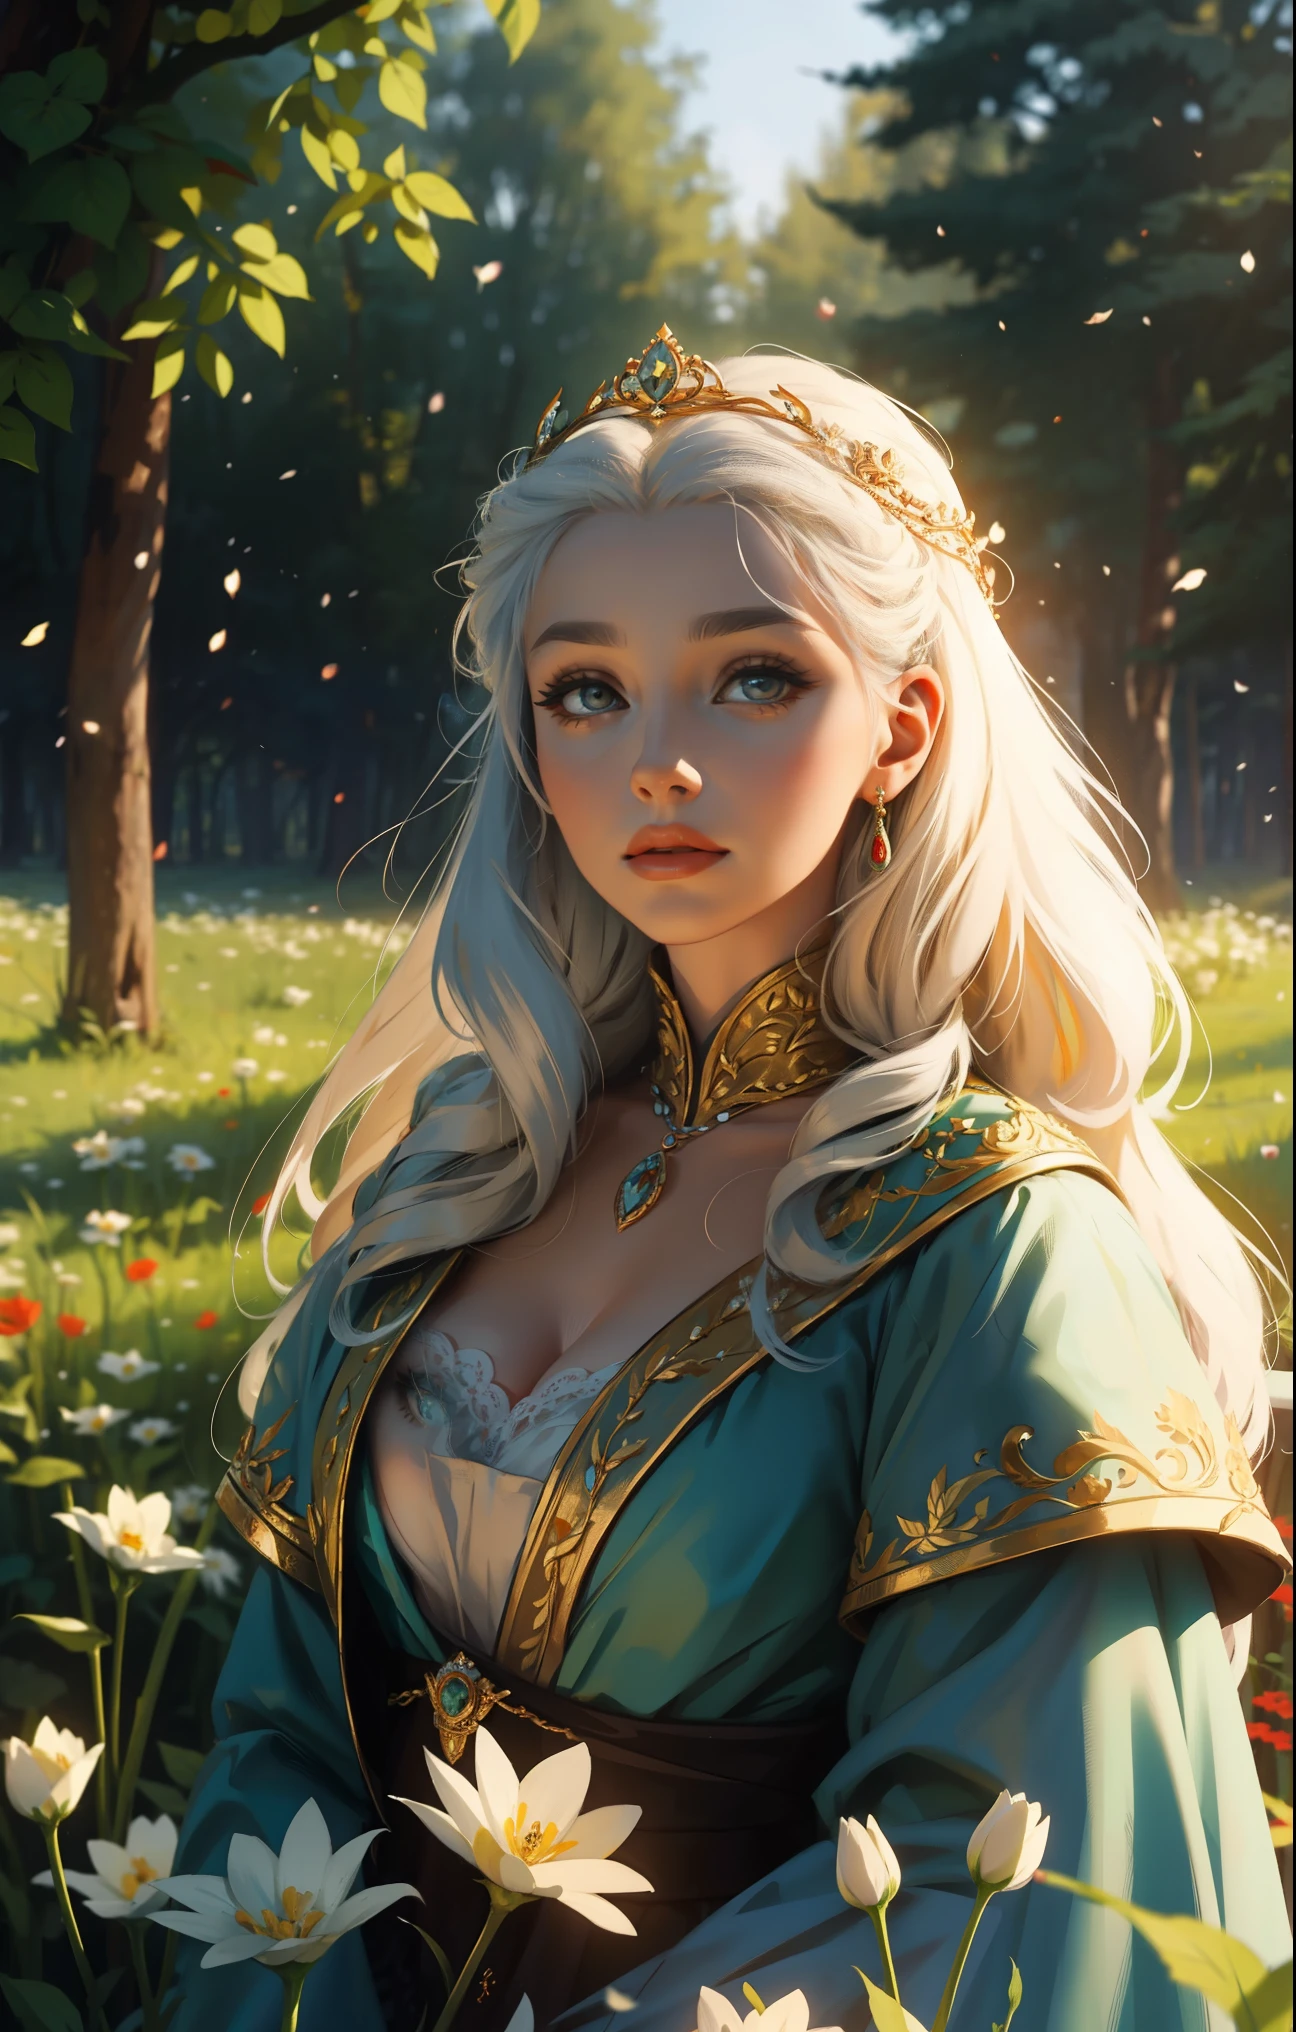 วัยกลางคน, เครือจักรภพโปแลนด์-ลิทัวเนีย, ดอกไม้, ป่า, ศตวรรษที่ 16, ผู้หญิงสวยผมยาวสีขาว, ใบหน้าที่คล้ายกับ Daenerys ในชุดเจ้าชายของราชินี